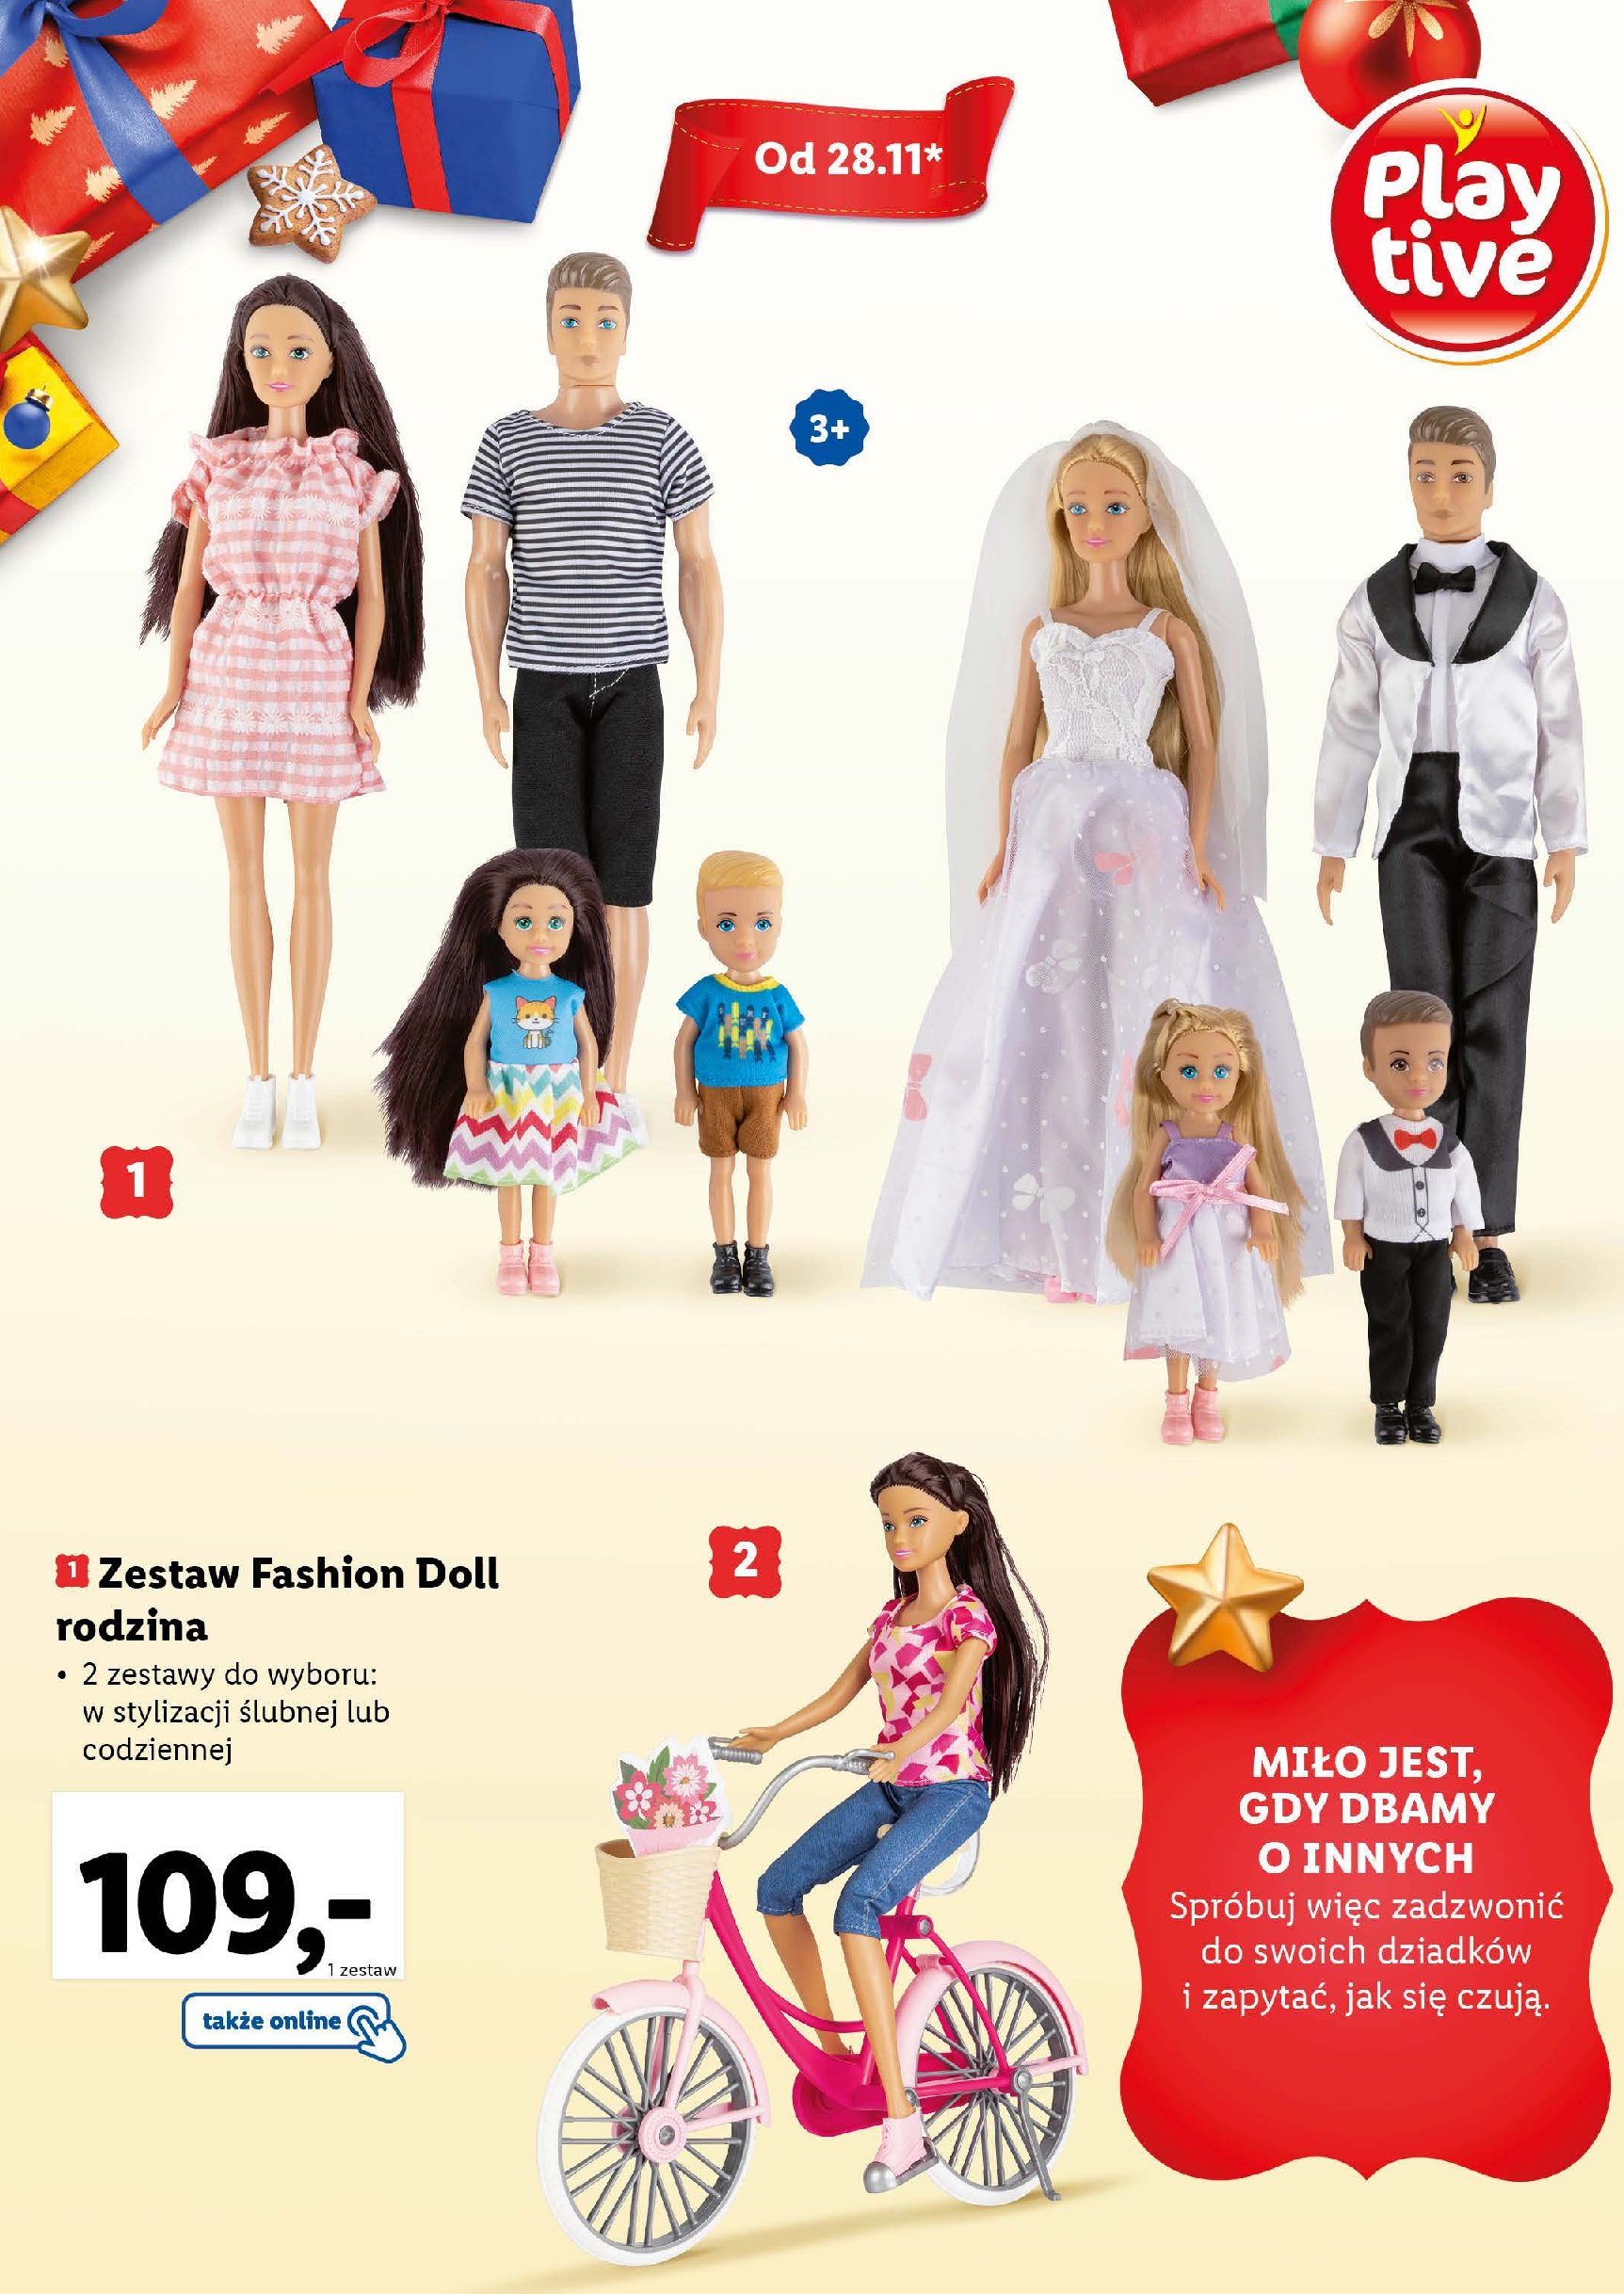 Zestaw fashion doll rodzina w stylizacji ślubnej Playtive promocja